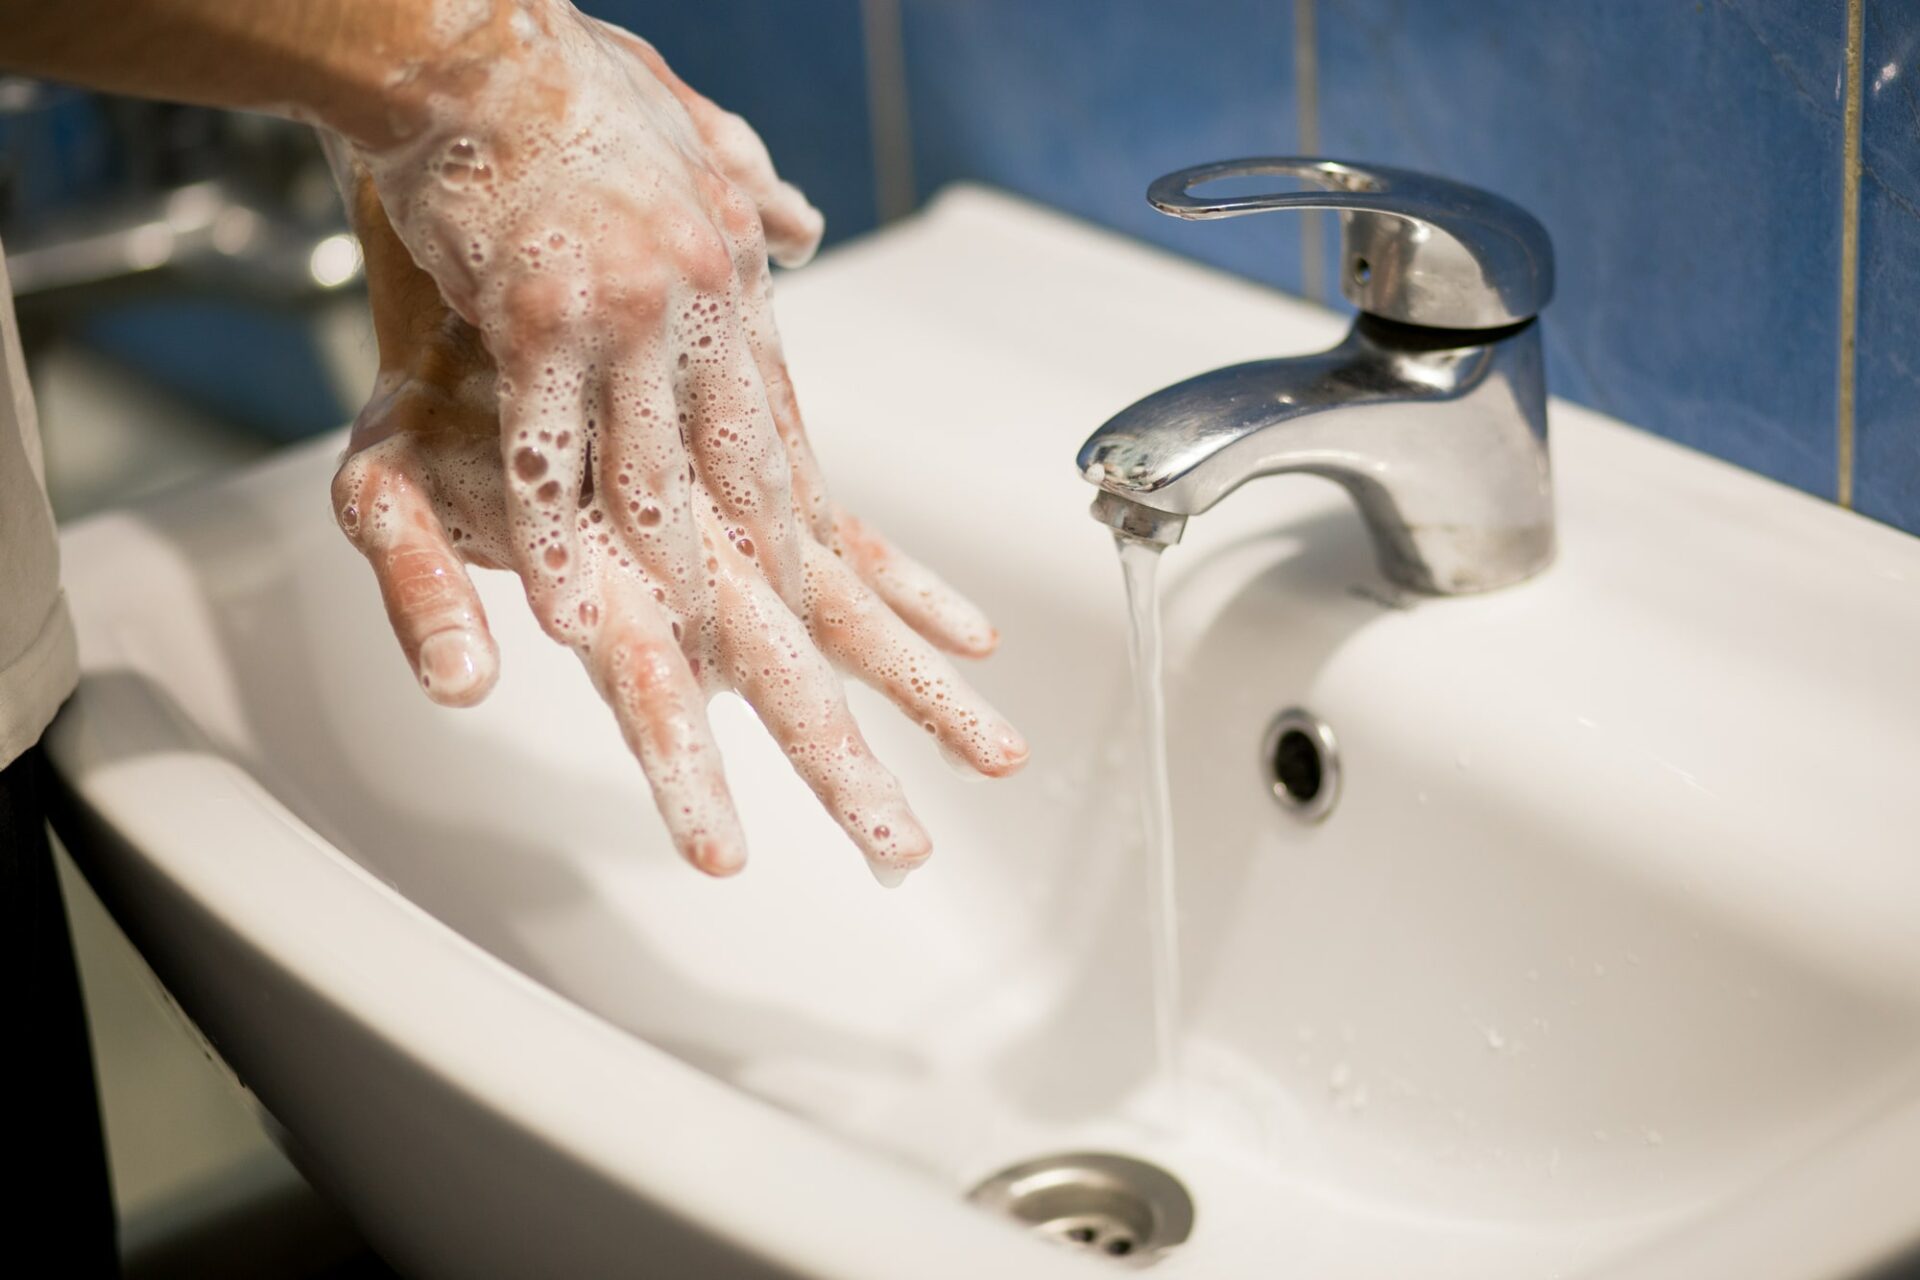 Про мытье рук. Раковина для мытья рук. Мыться в раковине. Мыло на раковине. Гигиеническое мытье рук с мылом.